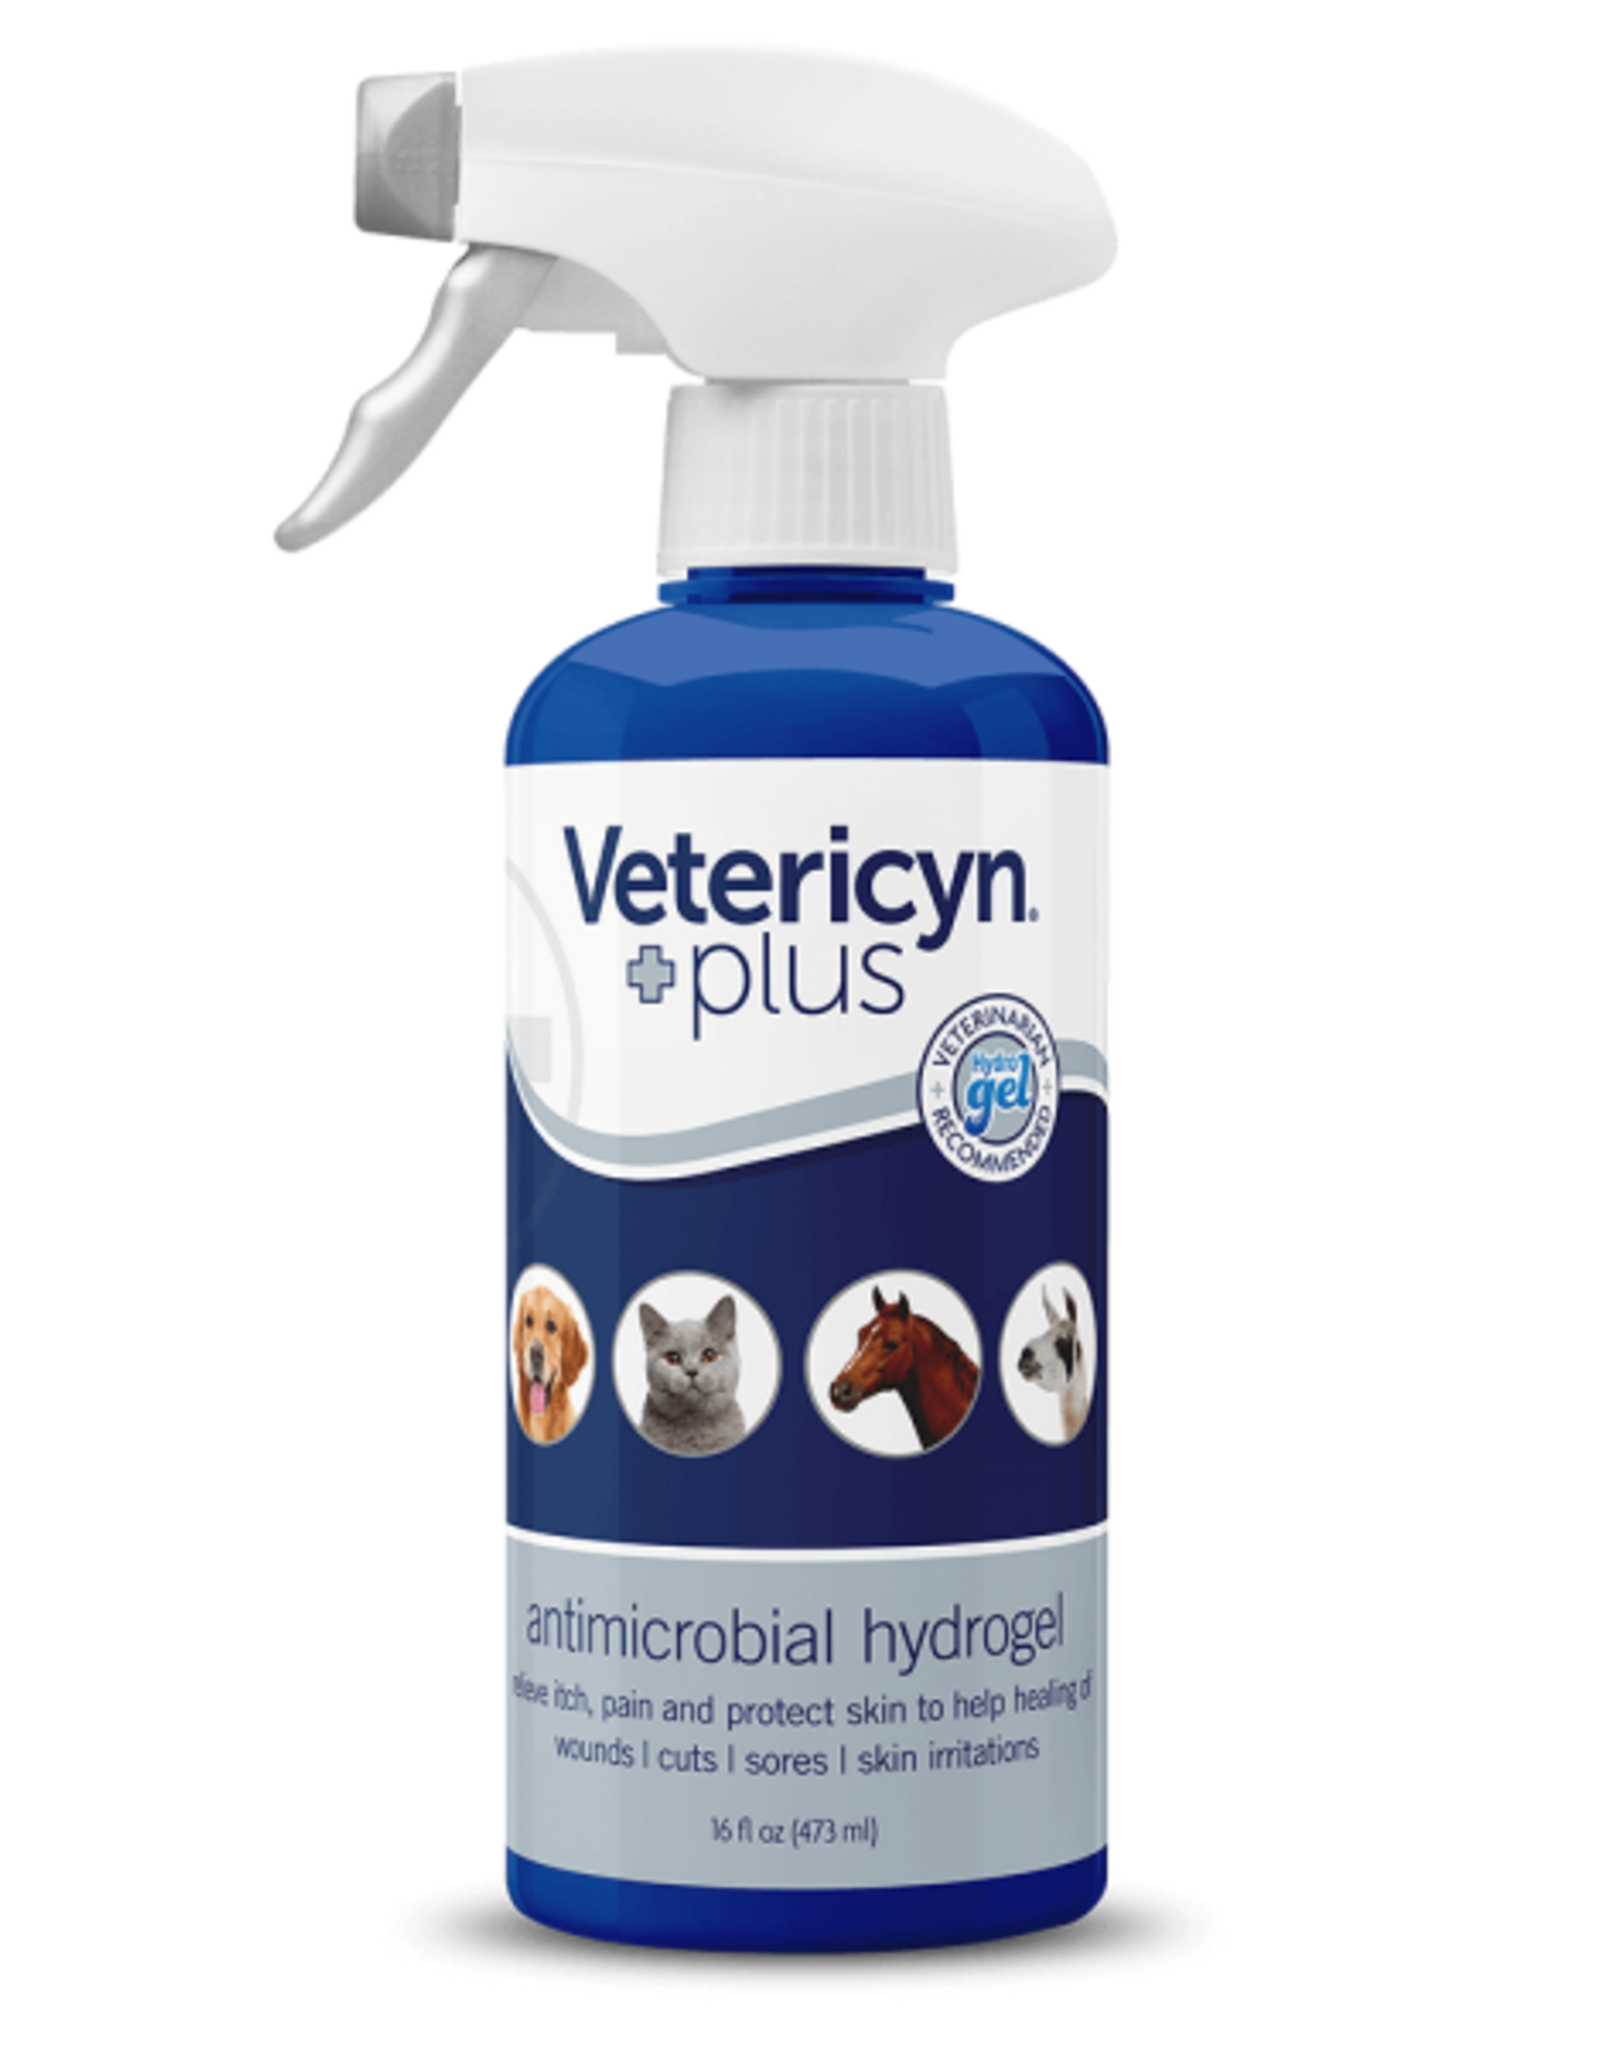 VETERICYN Vetericyn Plus® Antimicrobial Hydrogel Spray 16 OZ.